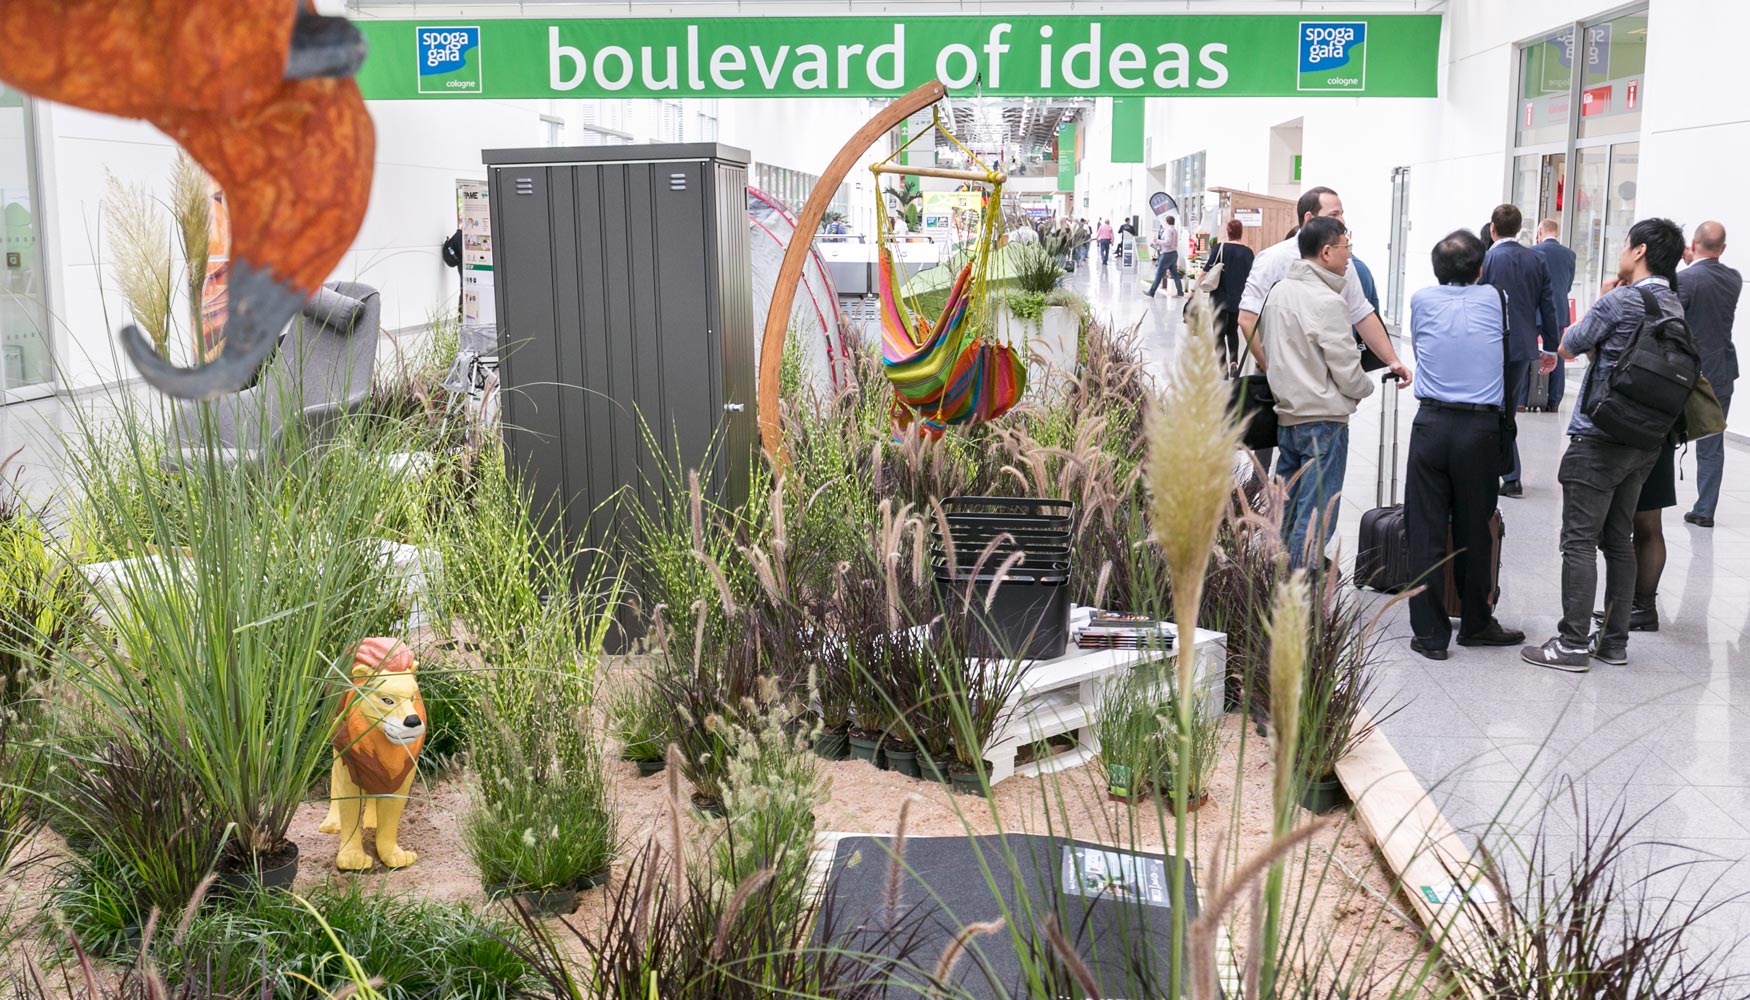 El Boulevard of ideas cont con muchas plantas vivas y una extensa oferta de presentaciones adicionales por parte de los expositores...